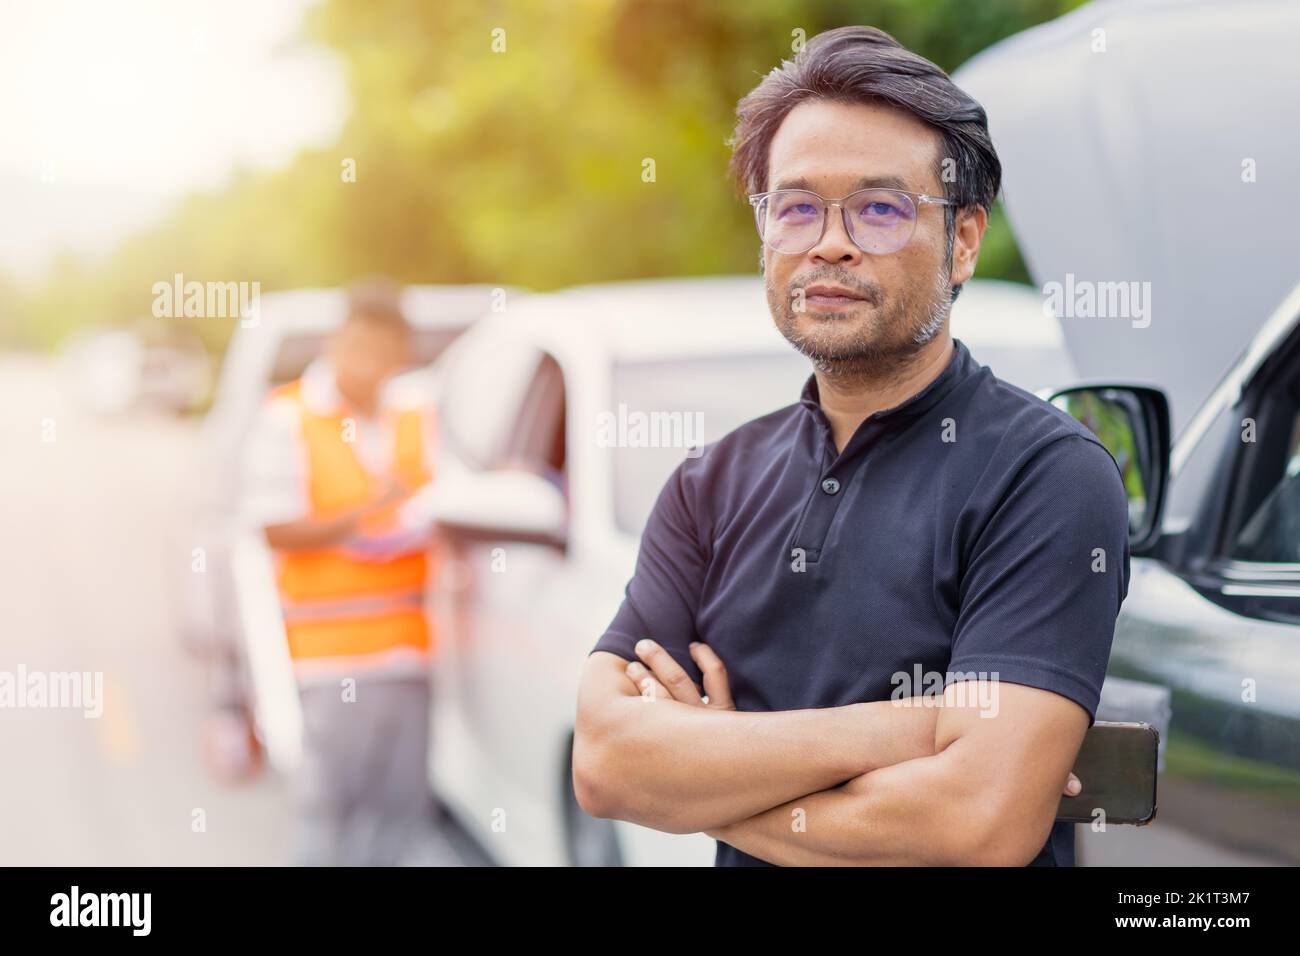 smart asian adulte homme debout sourire satisfait au bord de la route pour accident de voiture résolution de problèmes bon service de l'équipe d'assurance Banque D'Images